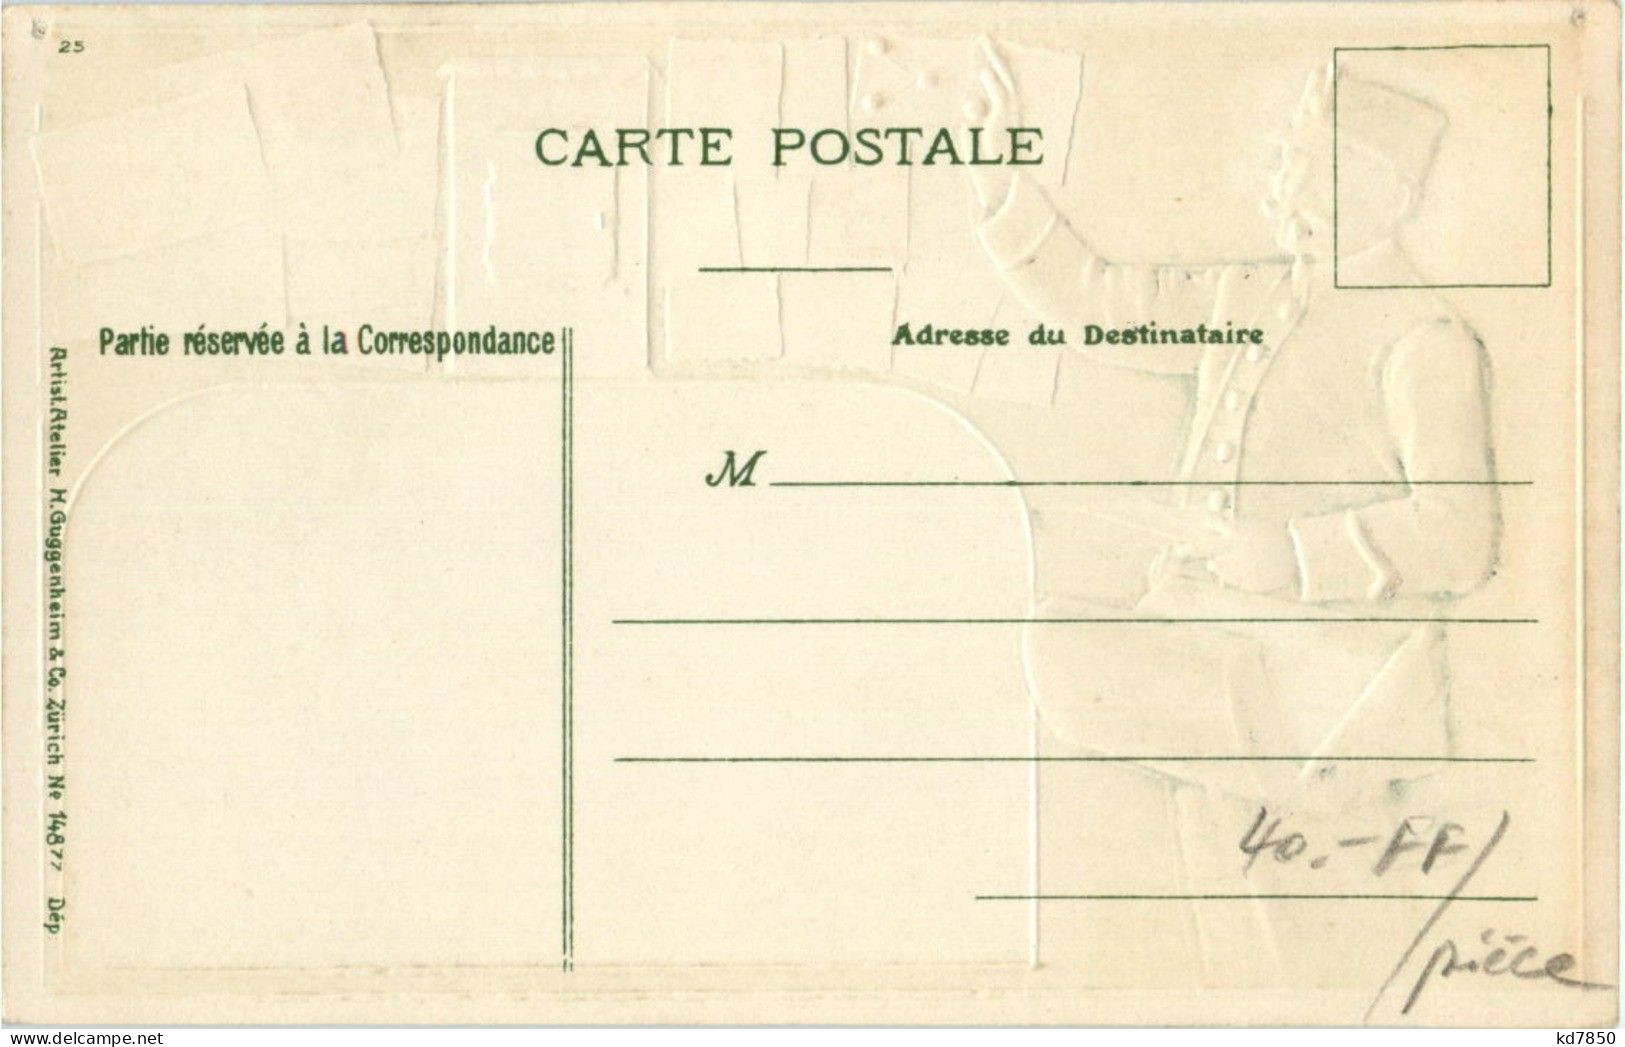 Postbote - Briefmarken - Litho - Poste & Postini